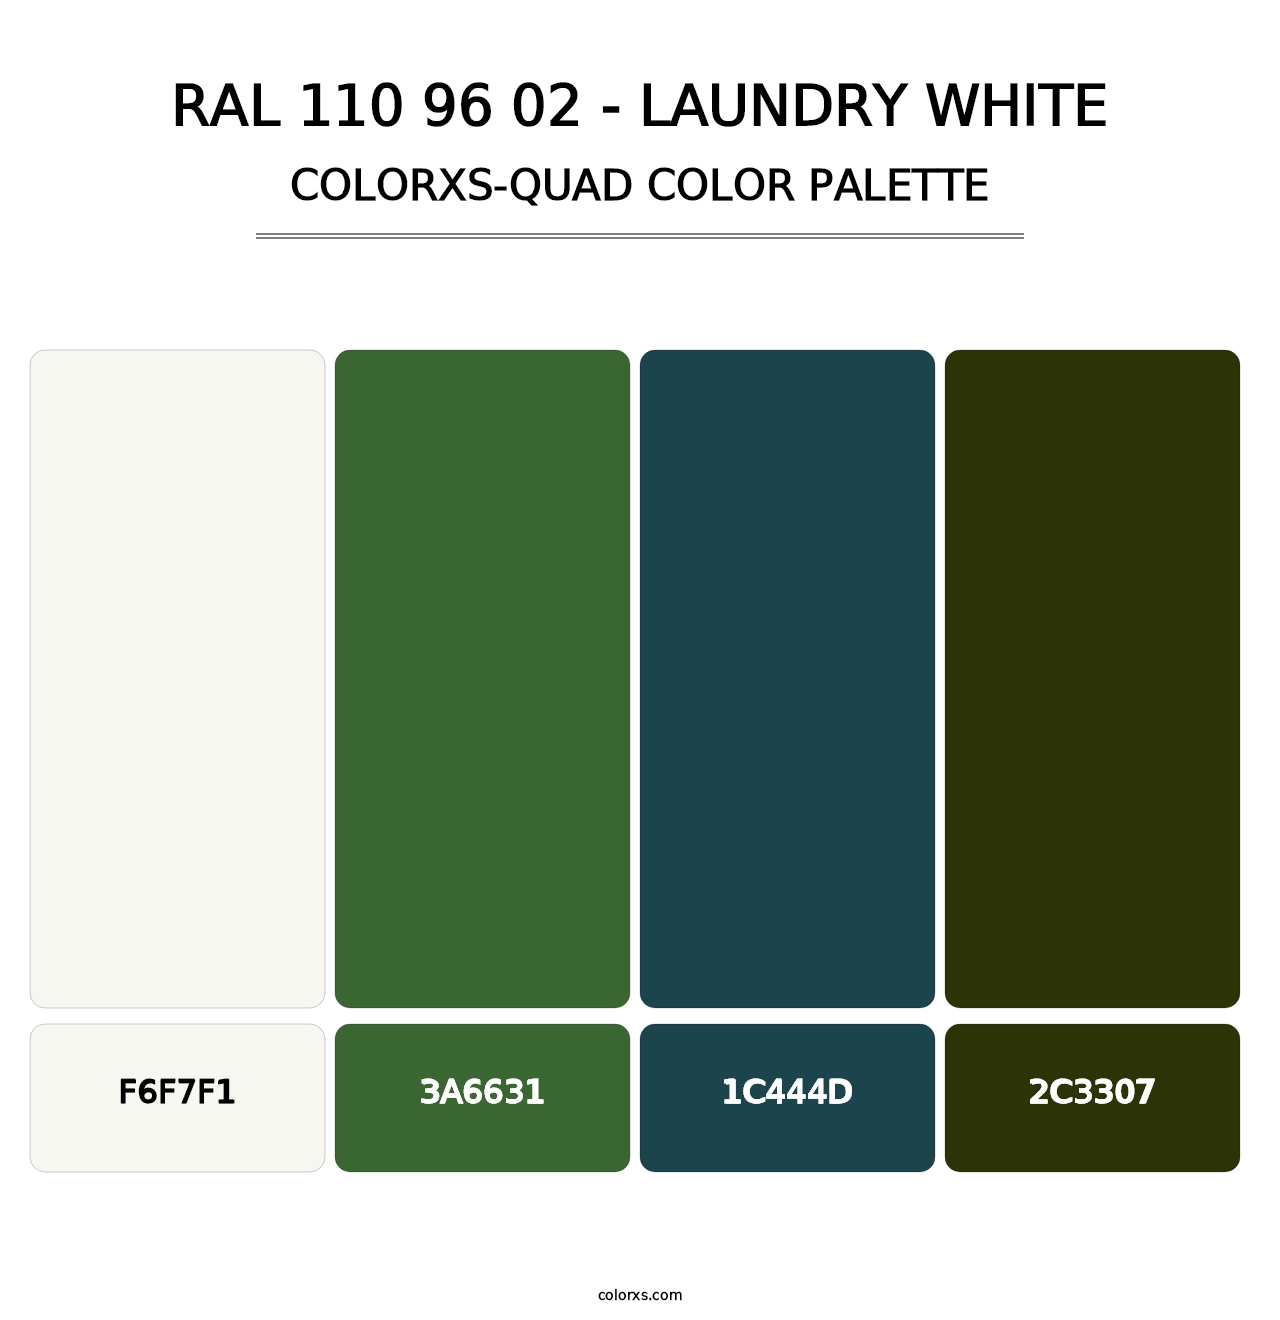 RAL 110 96 02 - Laundry White - Colorxs Quad Palette